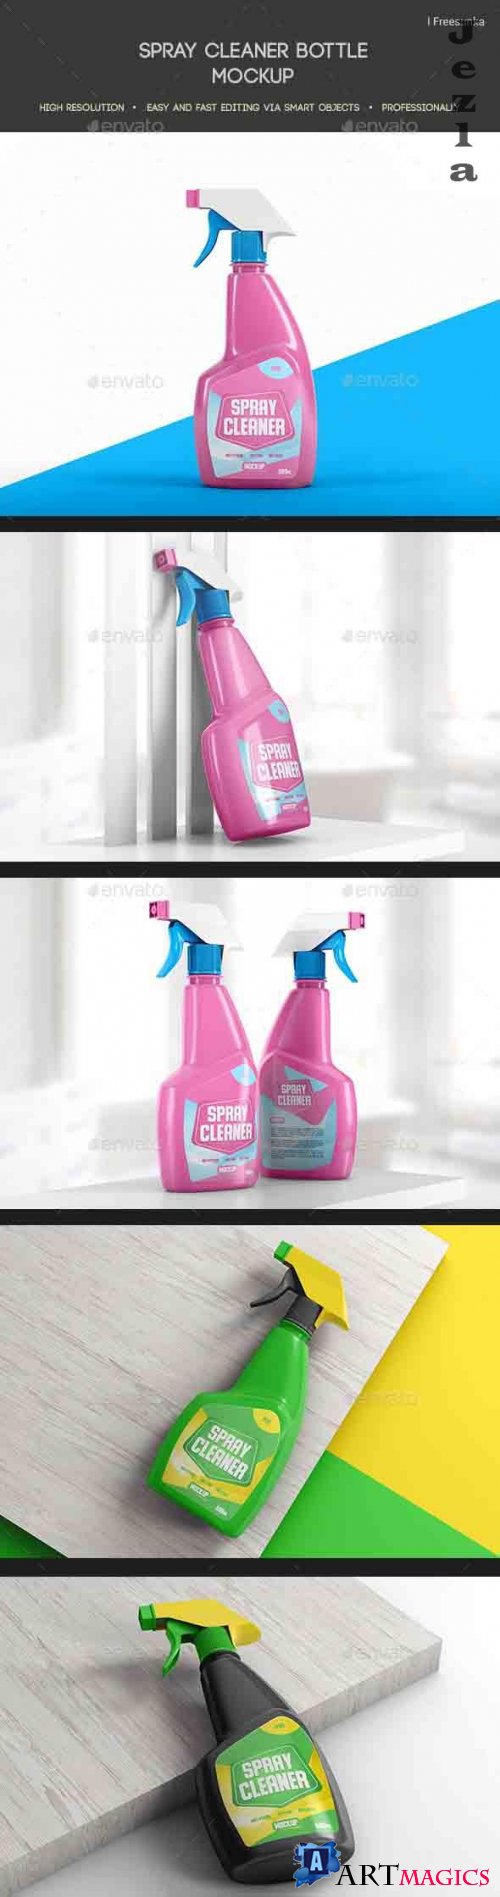 Spray Cleaner Bottle Mockup - 27136310